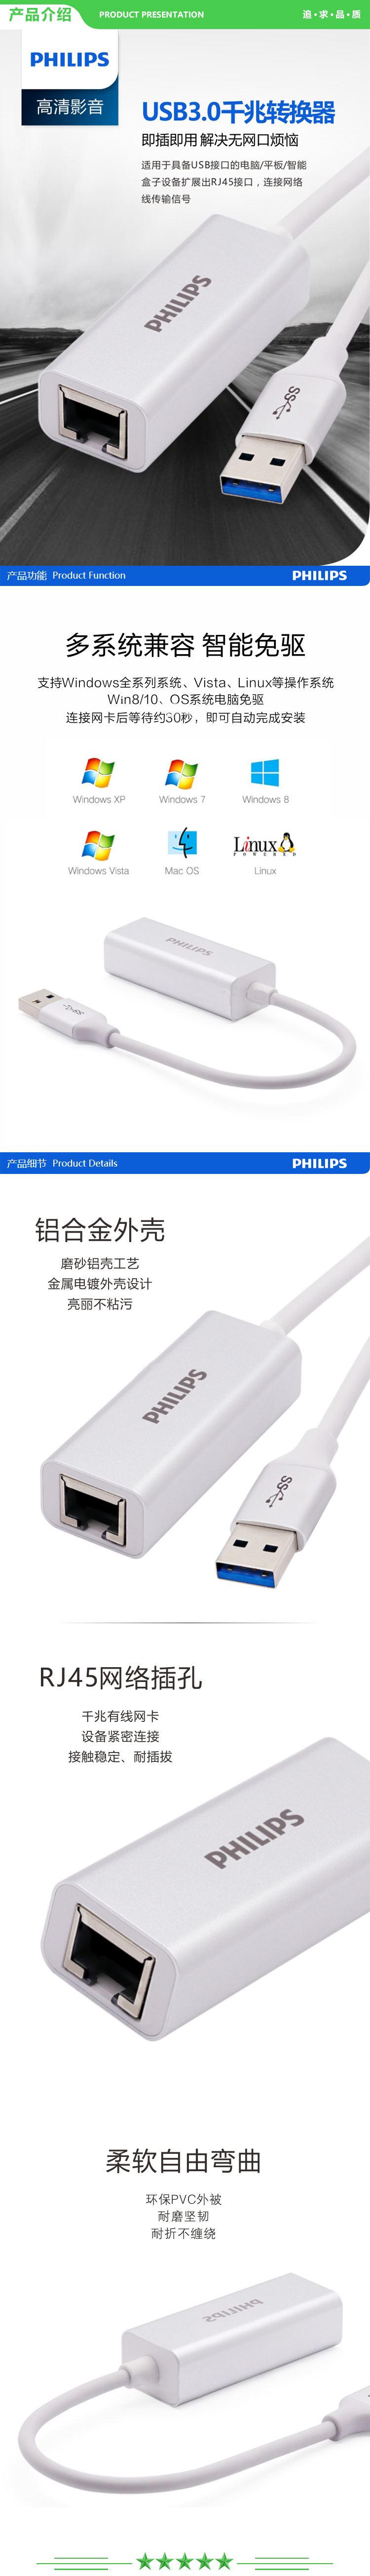 飞利浦 PHILIPS SWR1609I 93 USB3.0有线千兆网卡 USB转RJ45网线接口 转换器  .jpg